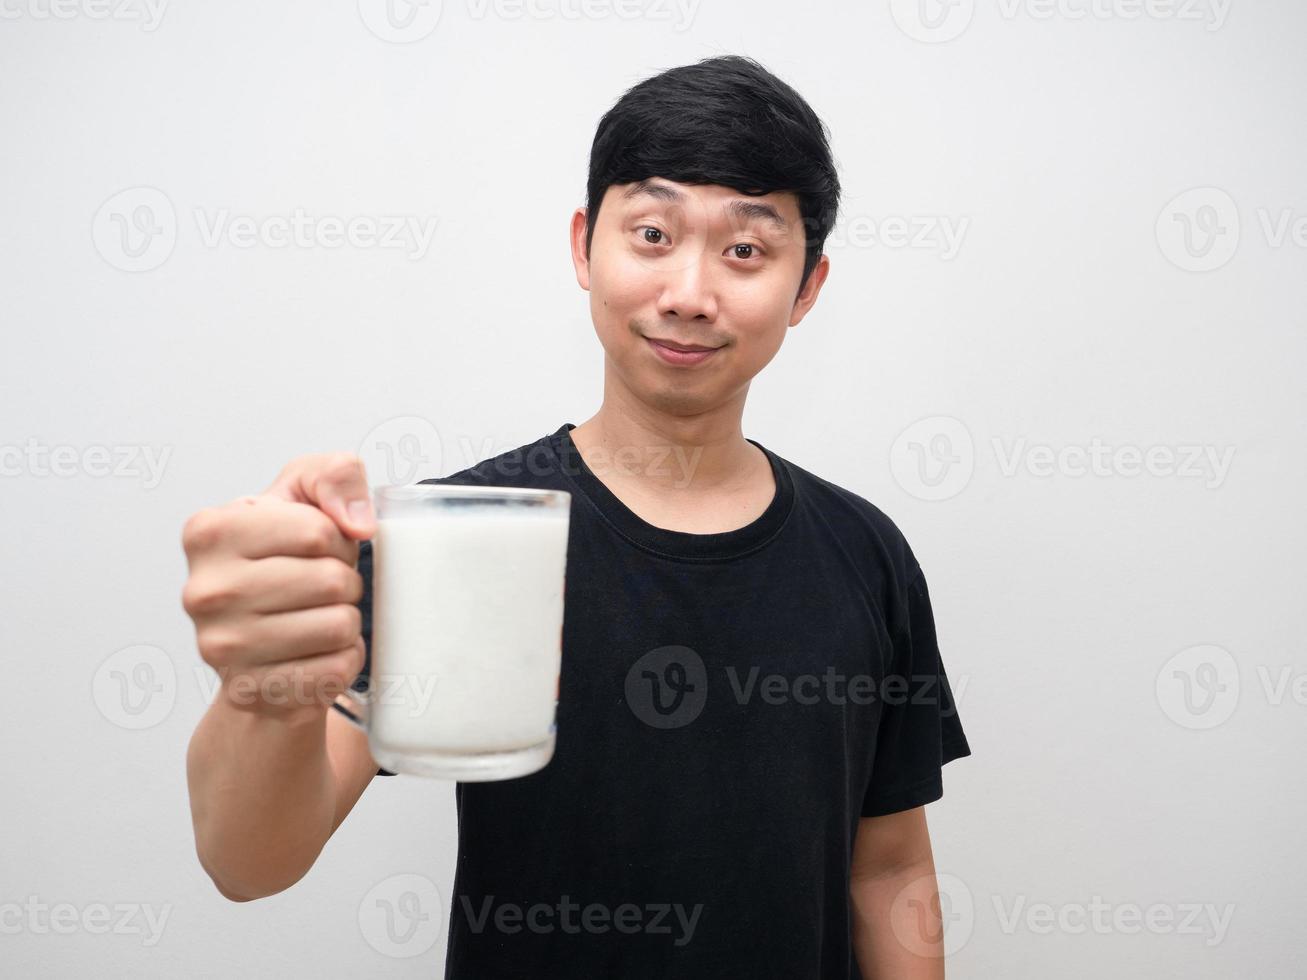 jovem dando copo de leite e rosto sorridente foto